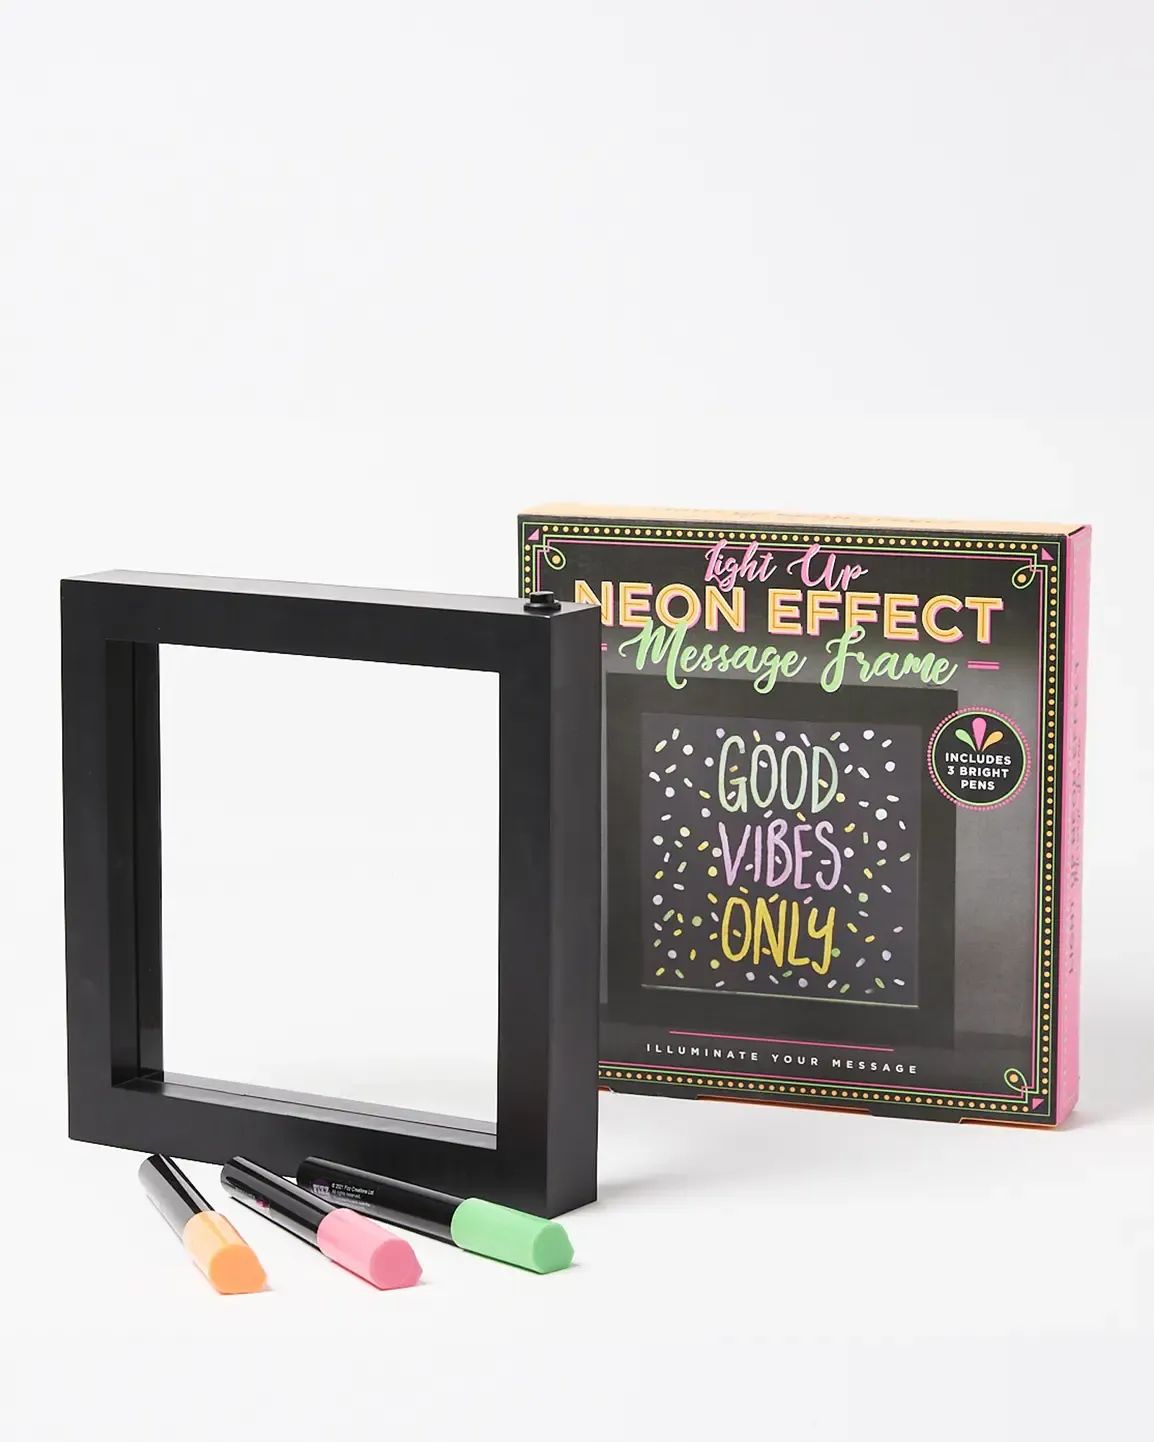 Light Up Neon Effect Message Frame | Oliver Bonas | Oliver Bonas (Global)